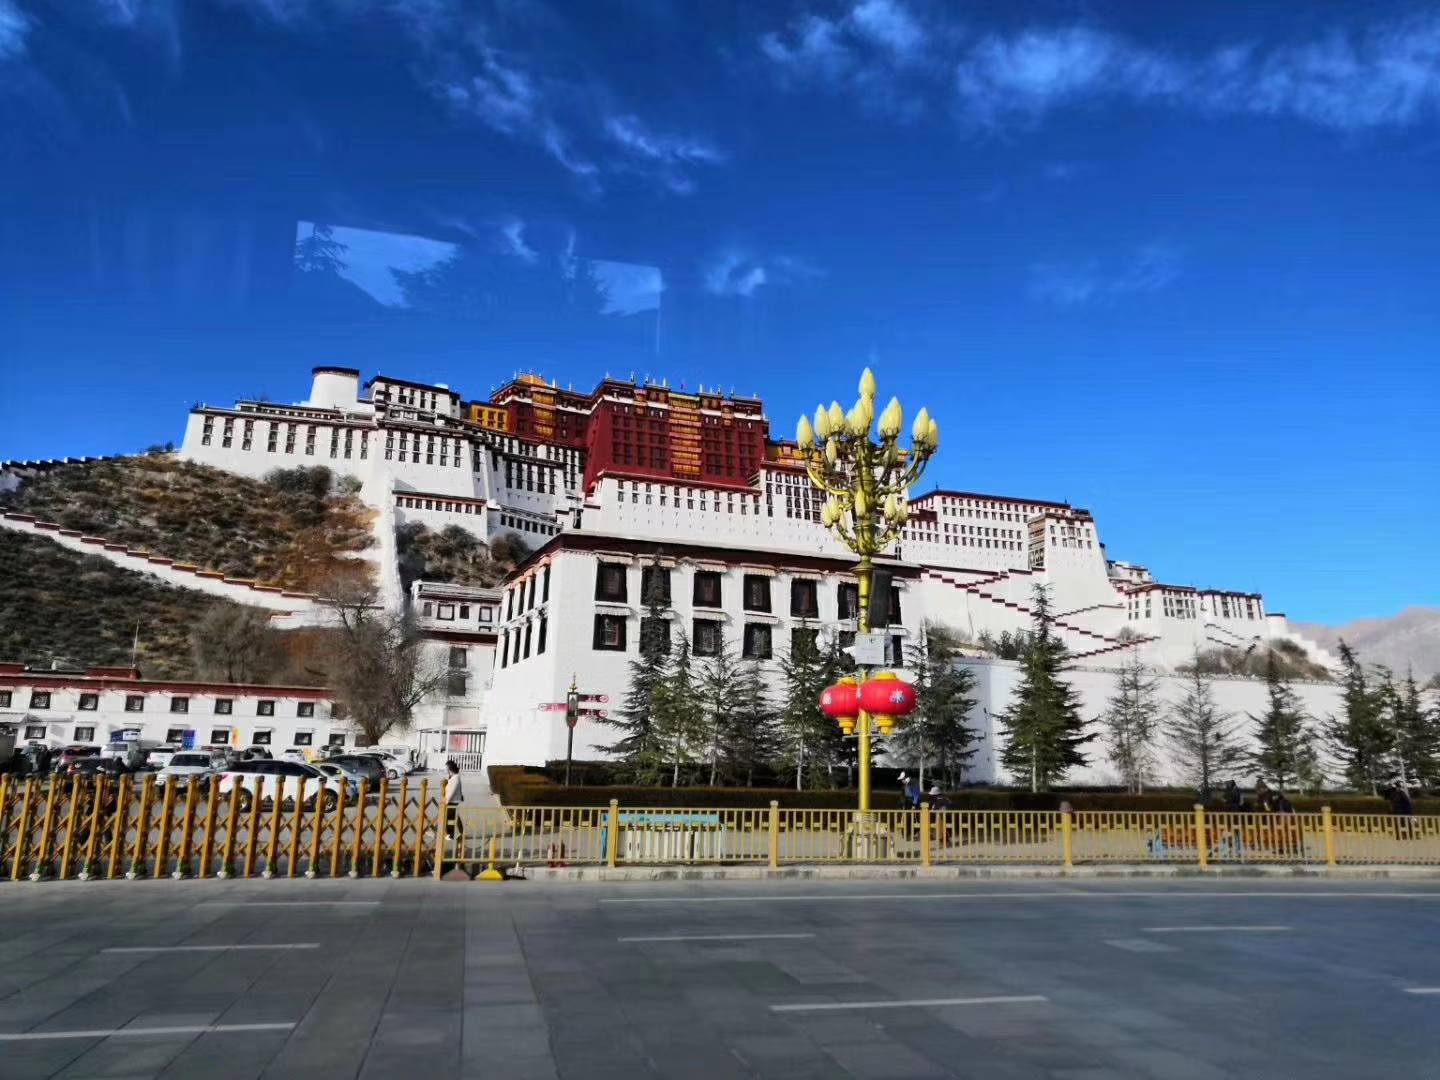 【西藏01线】拉萨布达拉宫、扎基寺、八廓街、林芝卡定沟、鲁朗林海、藏族家访、羊卓雍措三飞6/7天